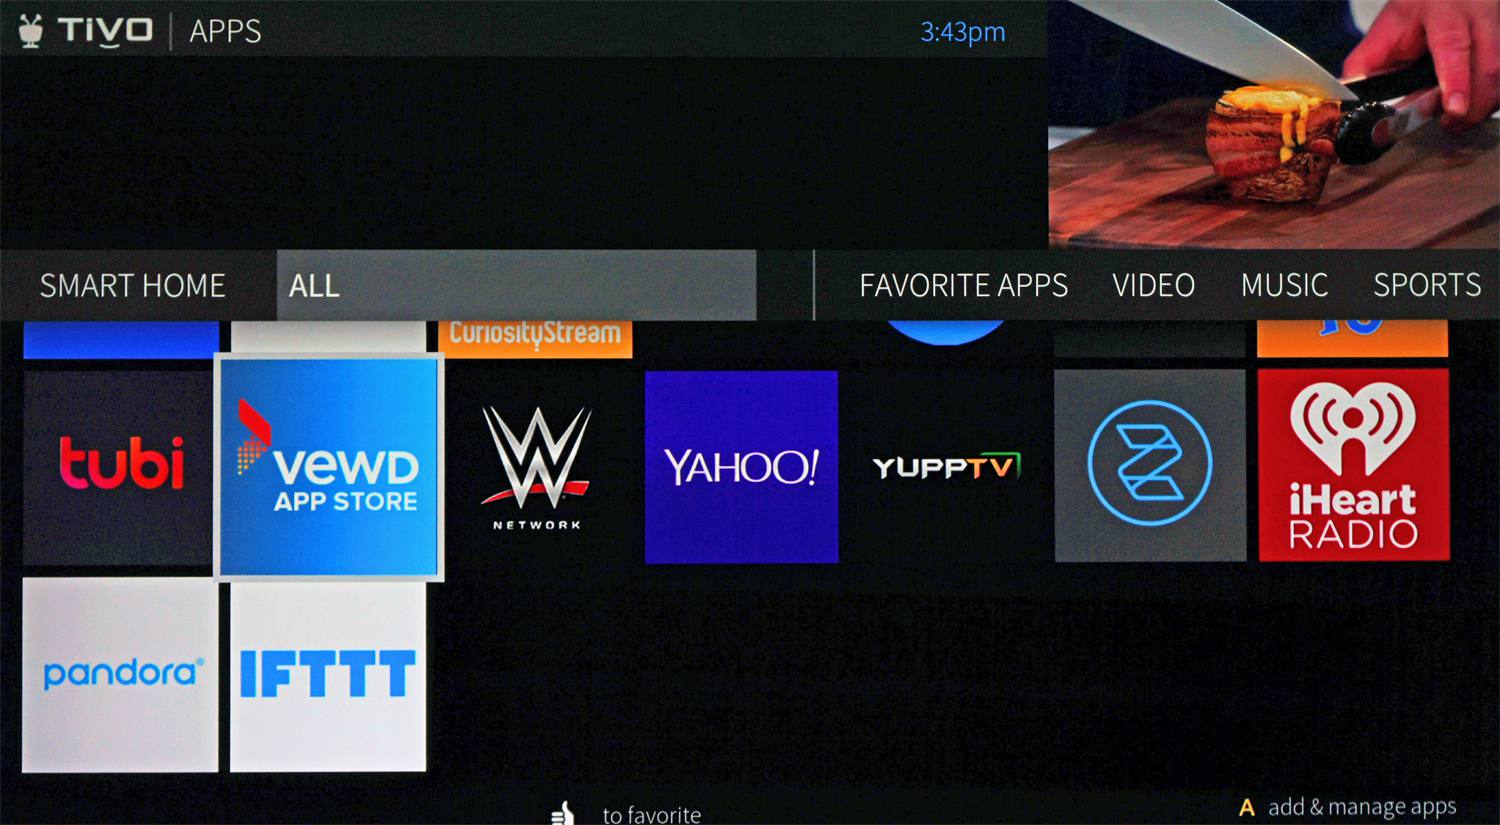 TIVO Apps-scherm – Selecteer VEWD App Store